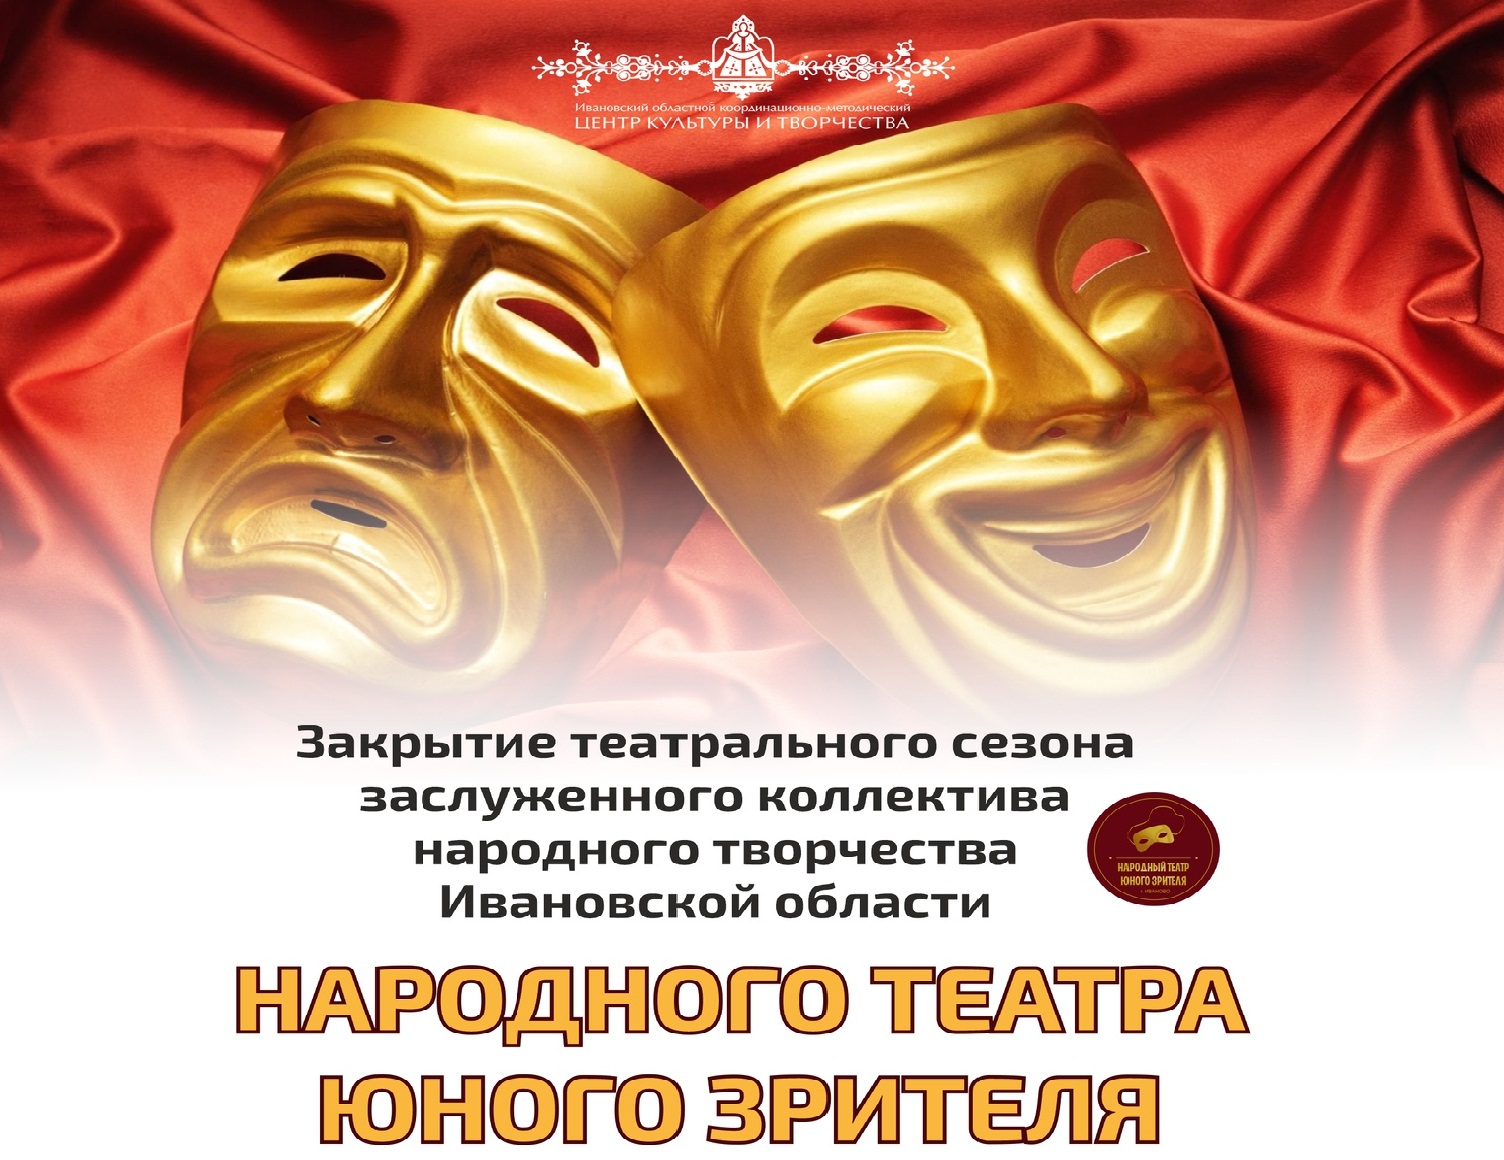 Народный театр юного зрителя в Иванове завершает сезон